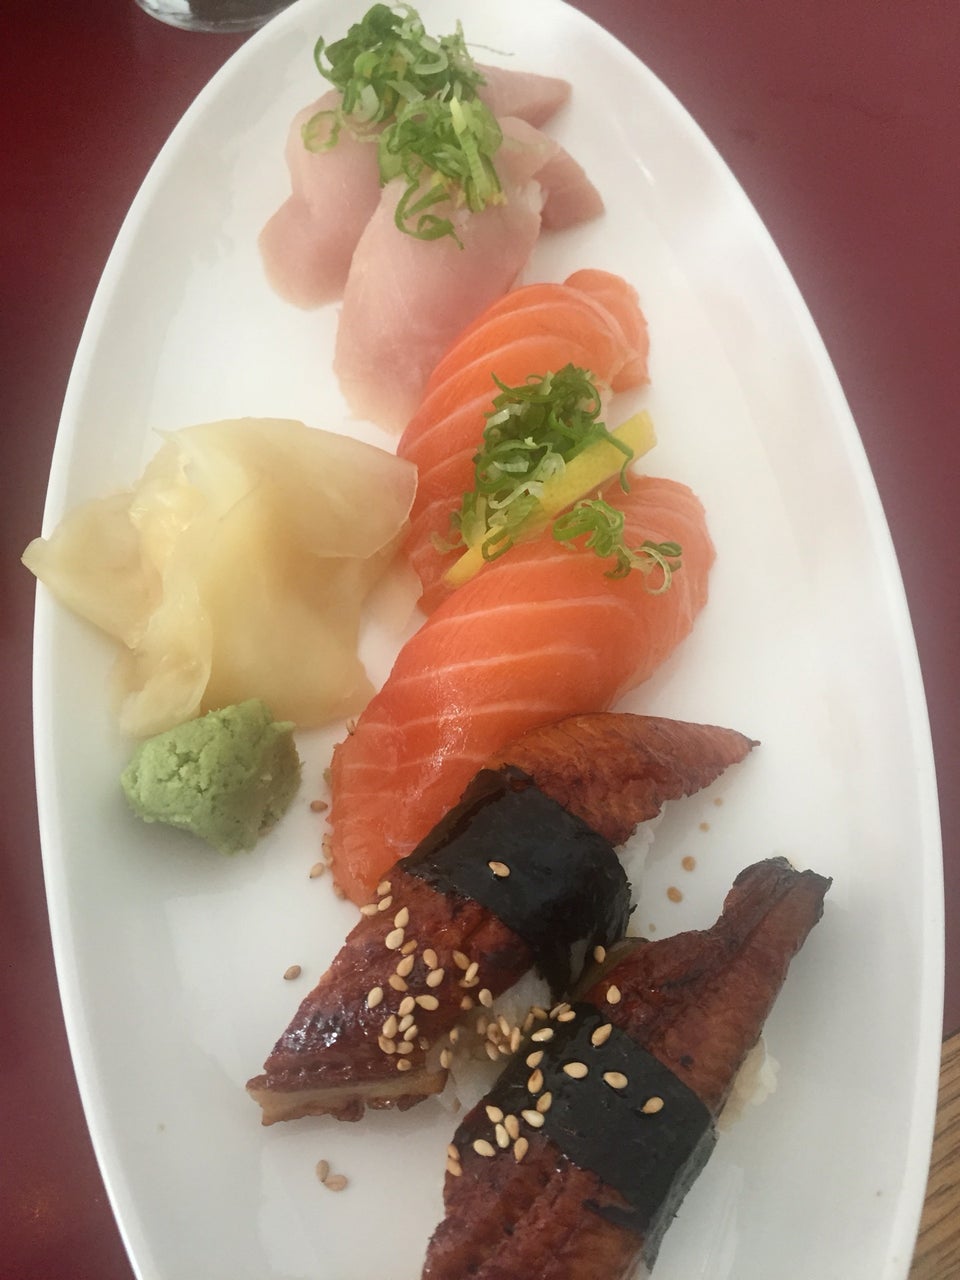 Photo of Sushi Zone